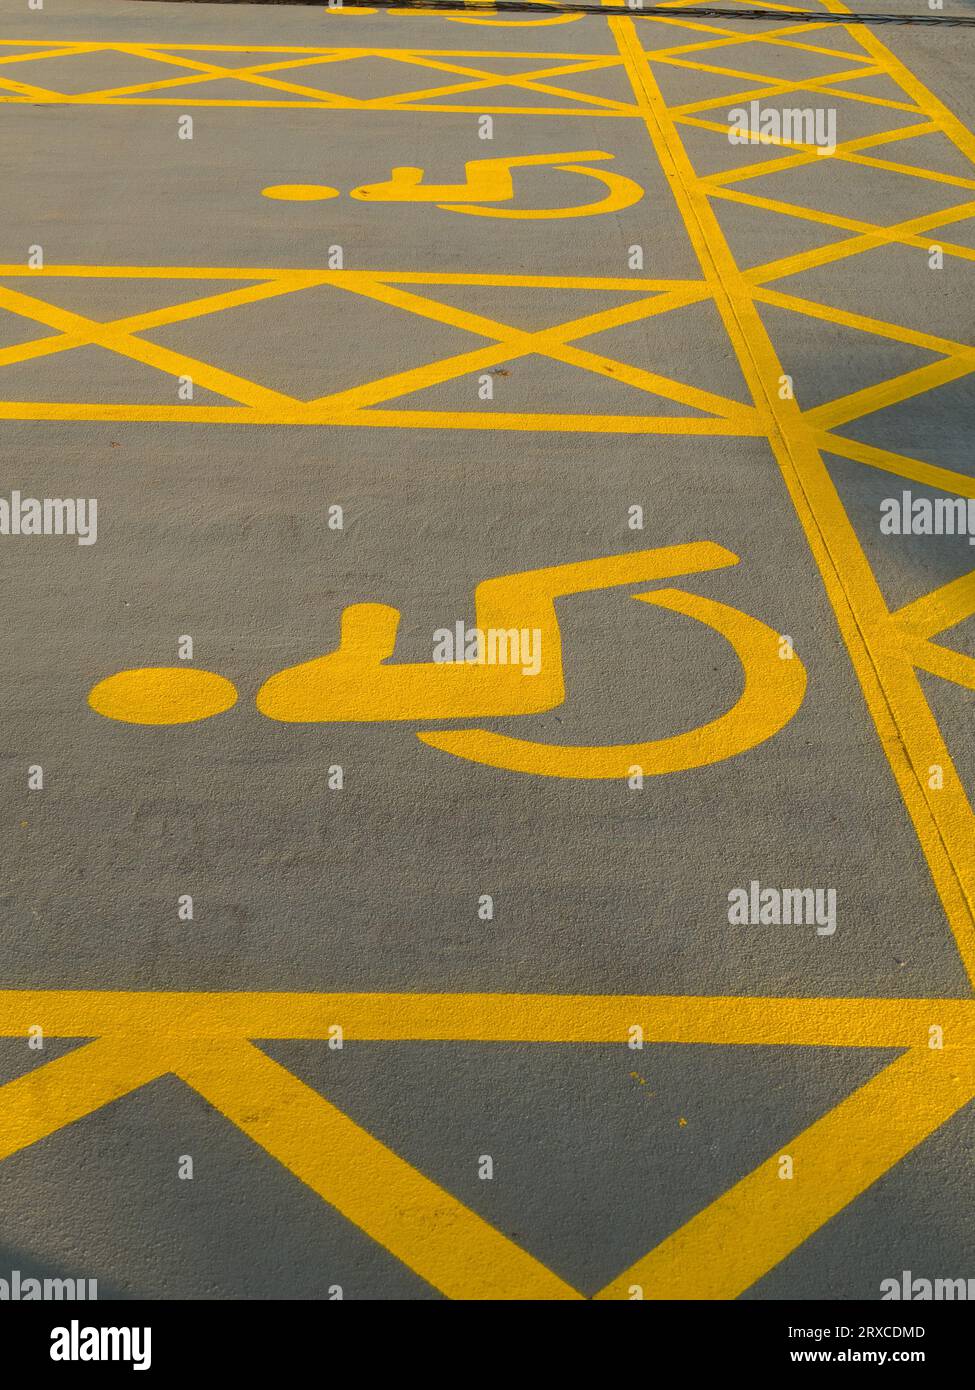 Deux places de stationnement pour handicapés fraîchement peintes en peinture jaune avec hachures croisées et symbole pour handicapés dans le parking, Angleterre, Royaume-Uni Banque D'Images